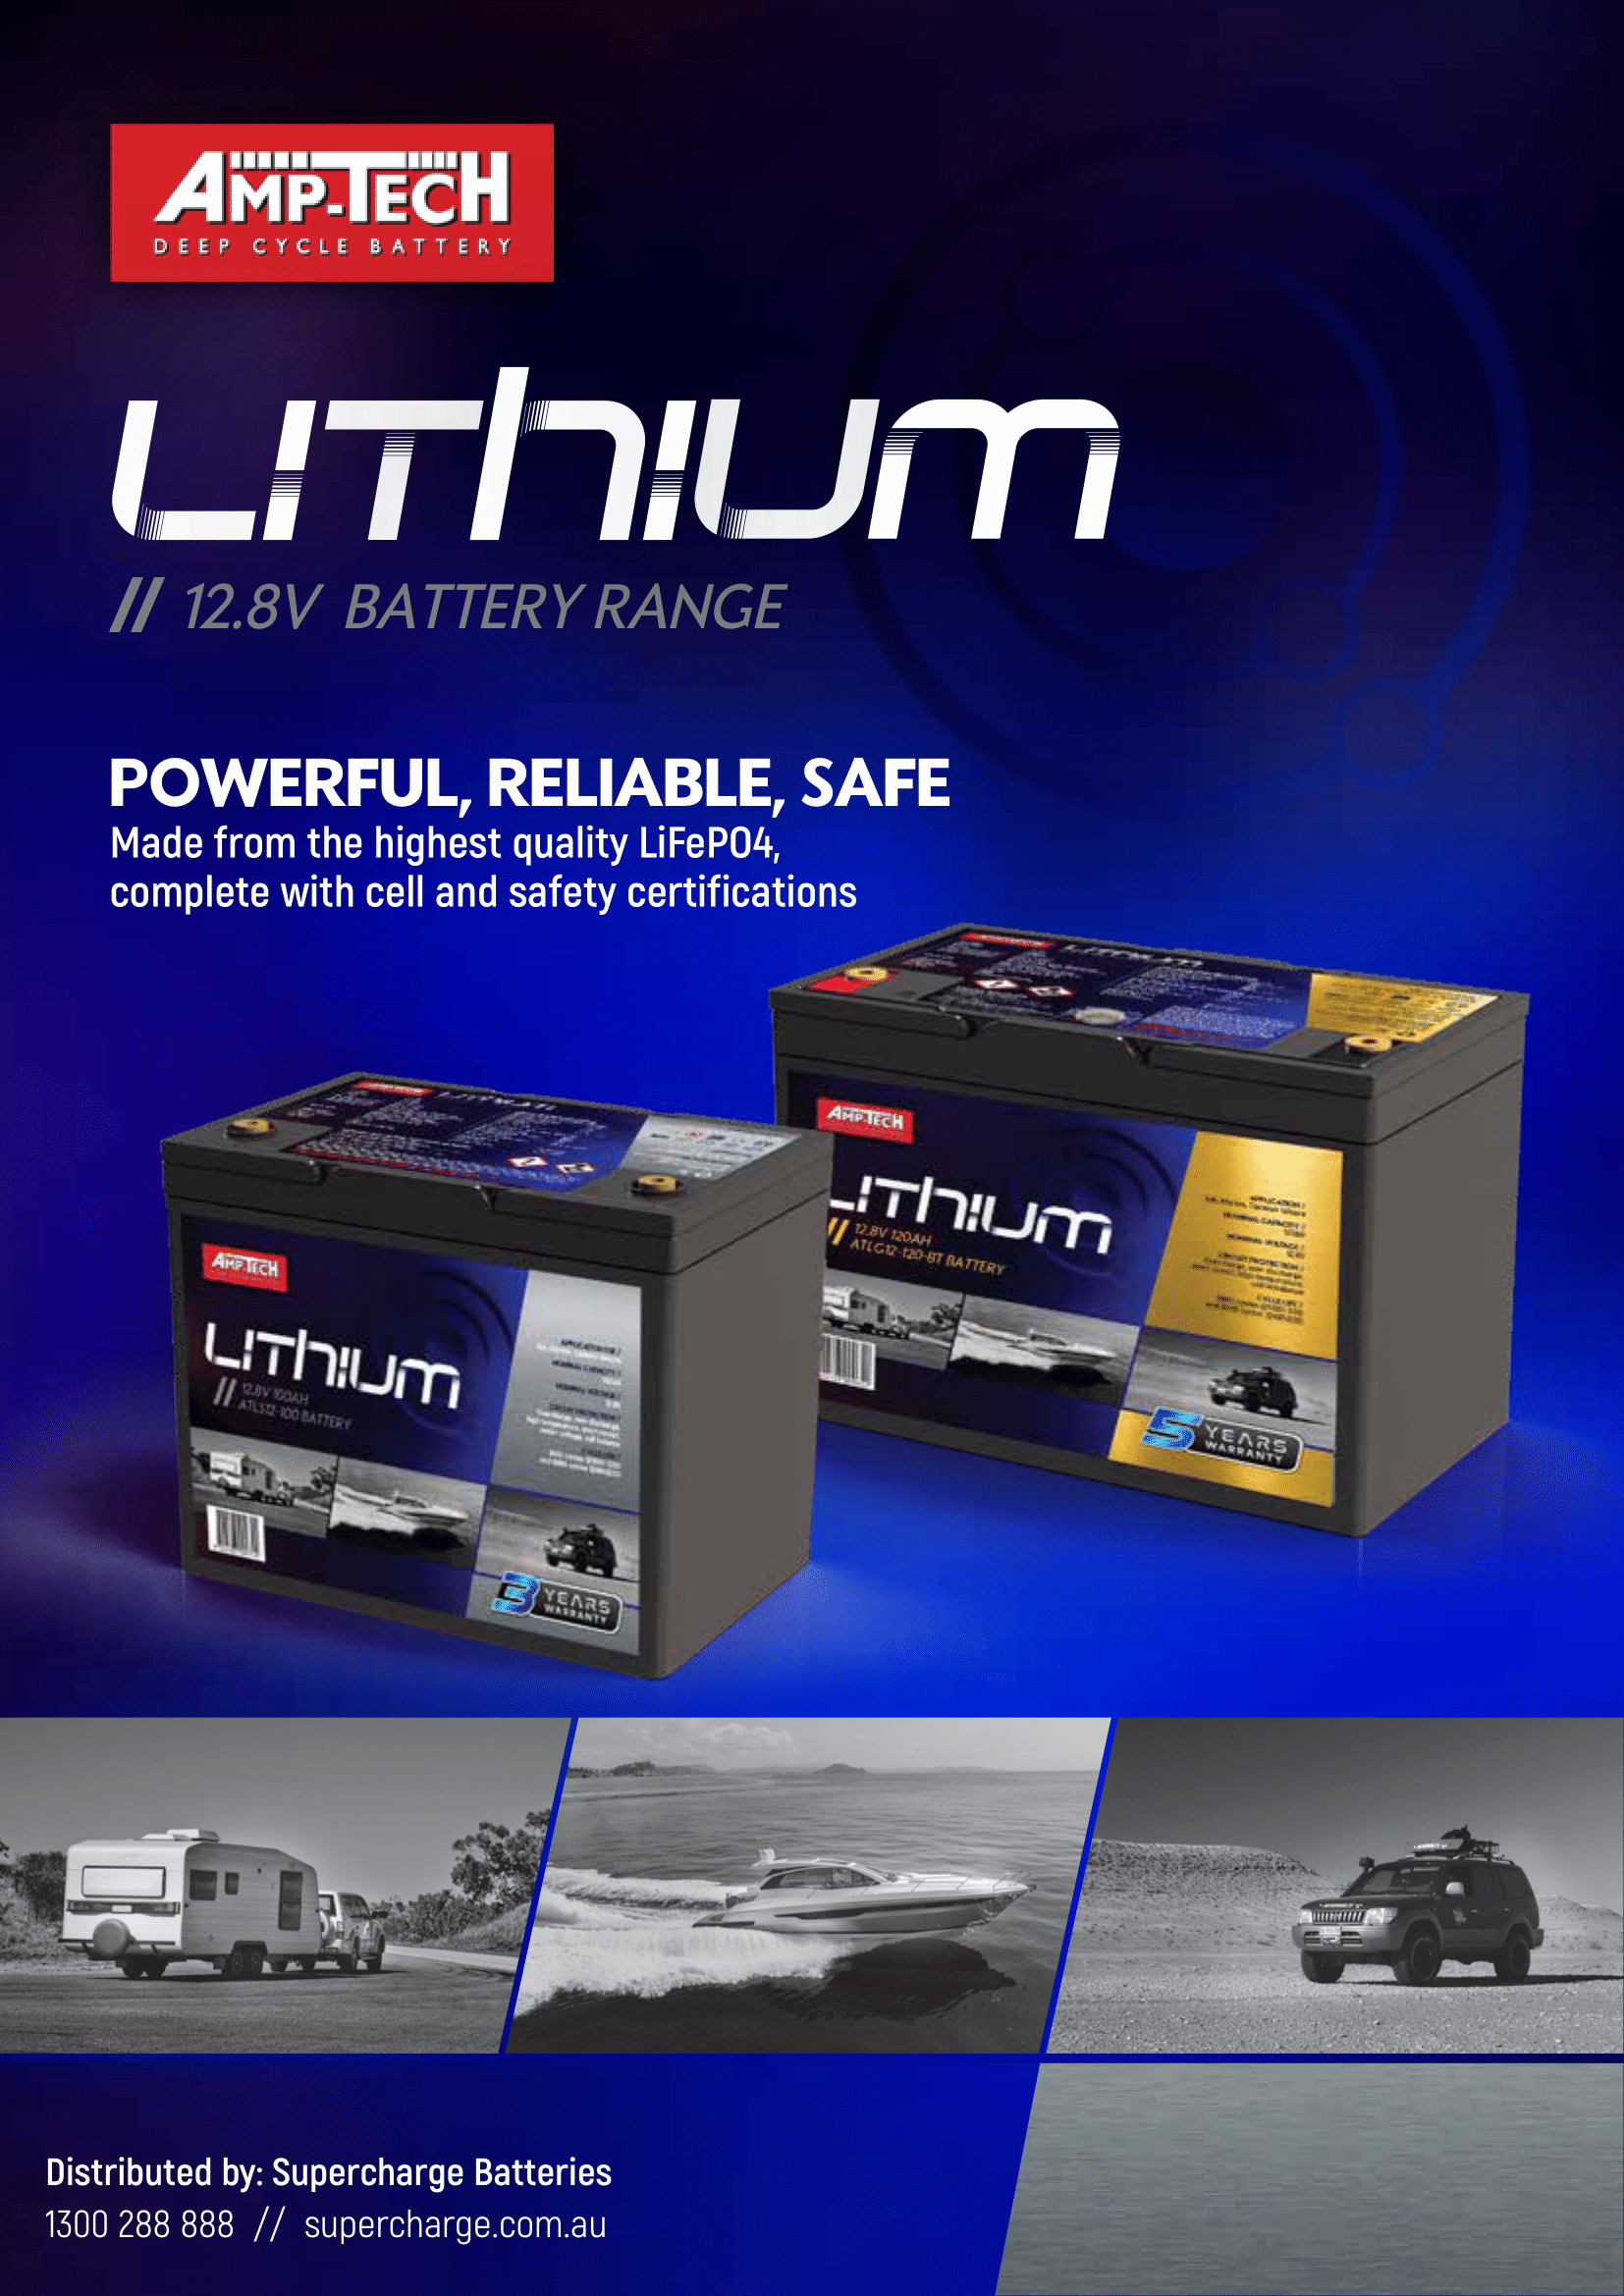 Amptech Lithium - Supercharge Batteries